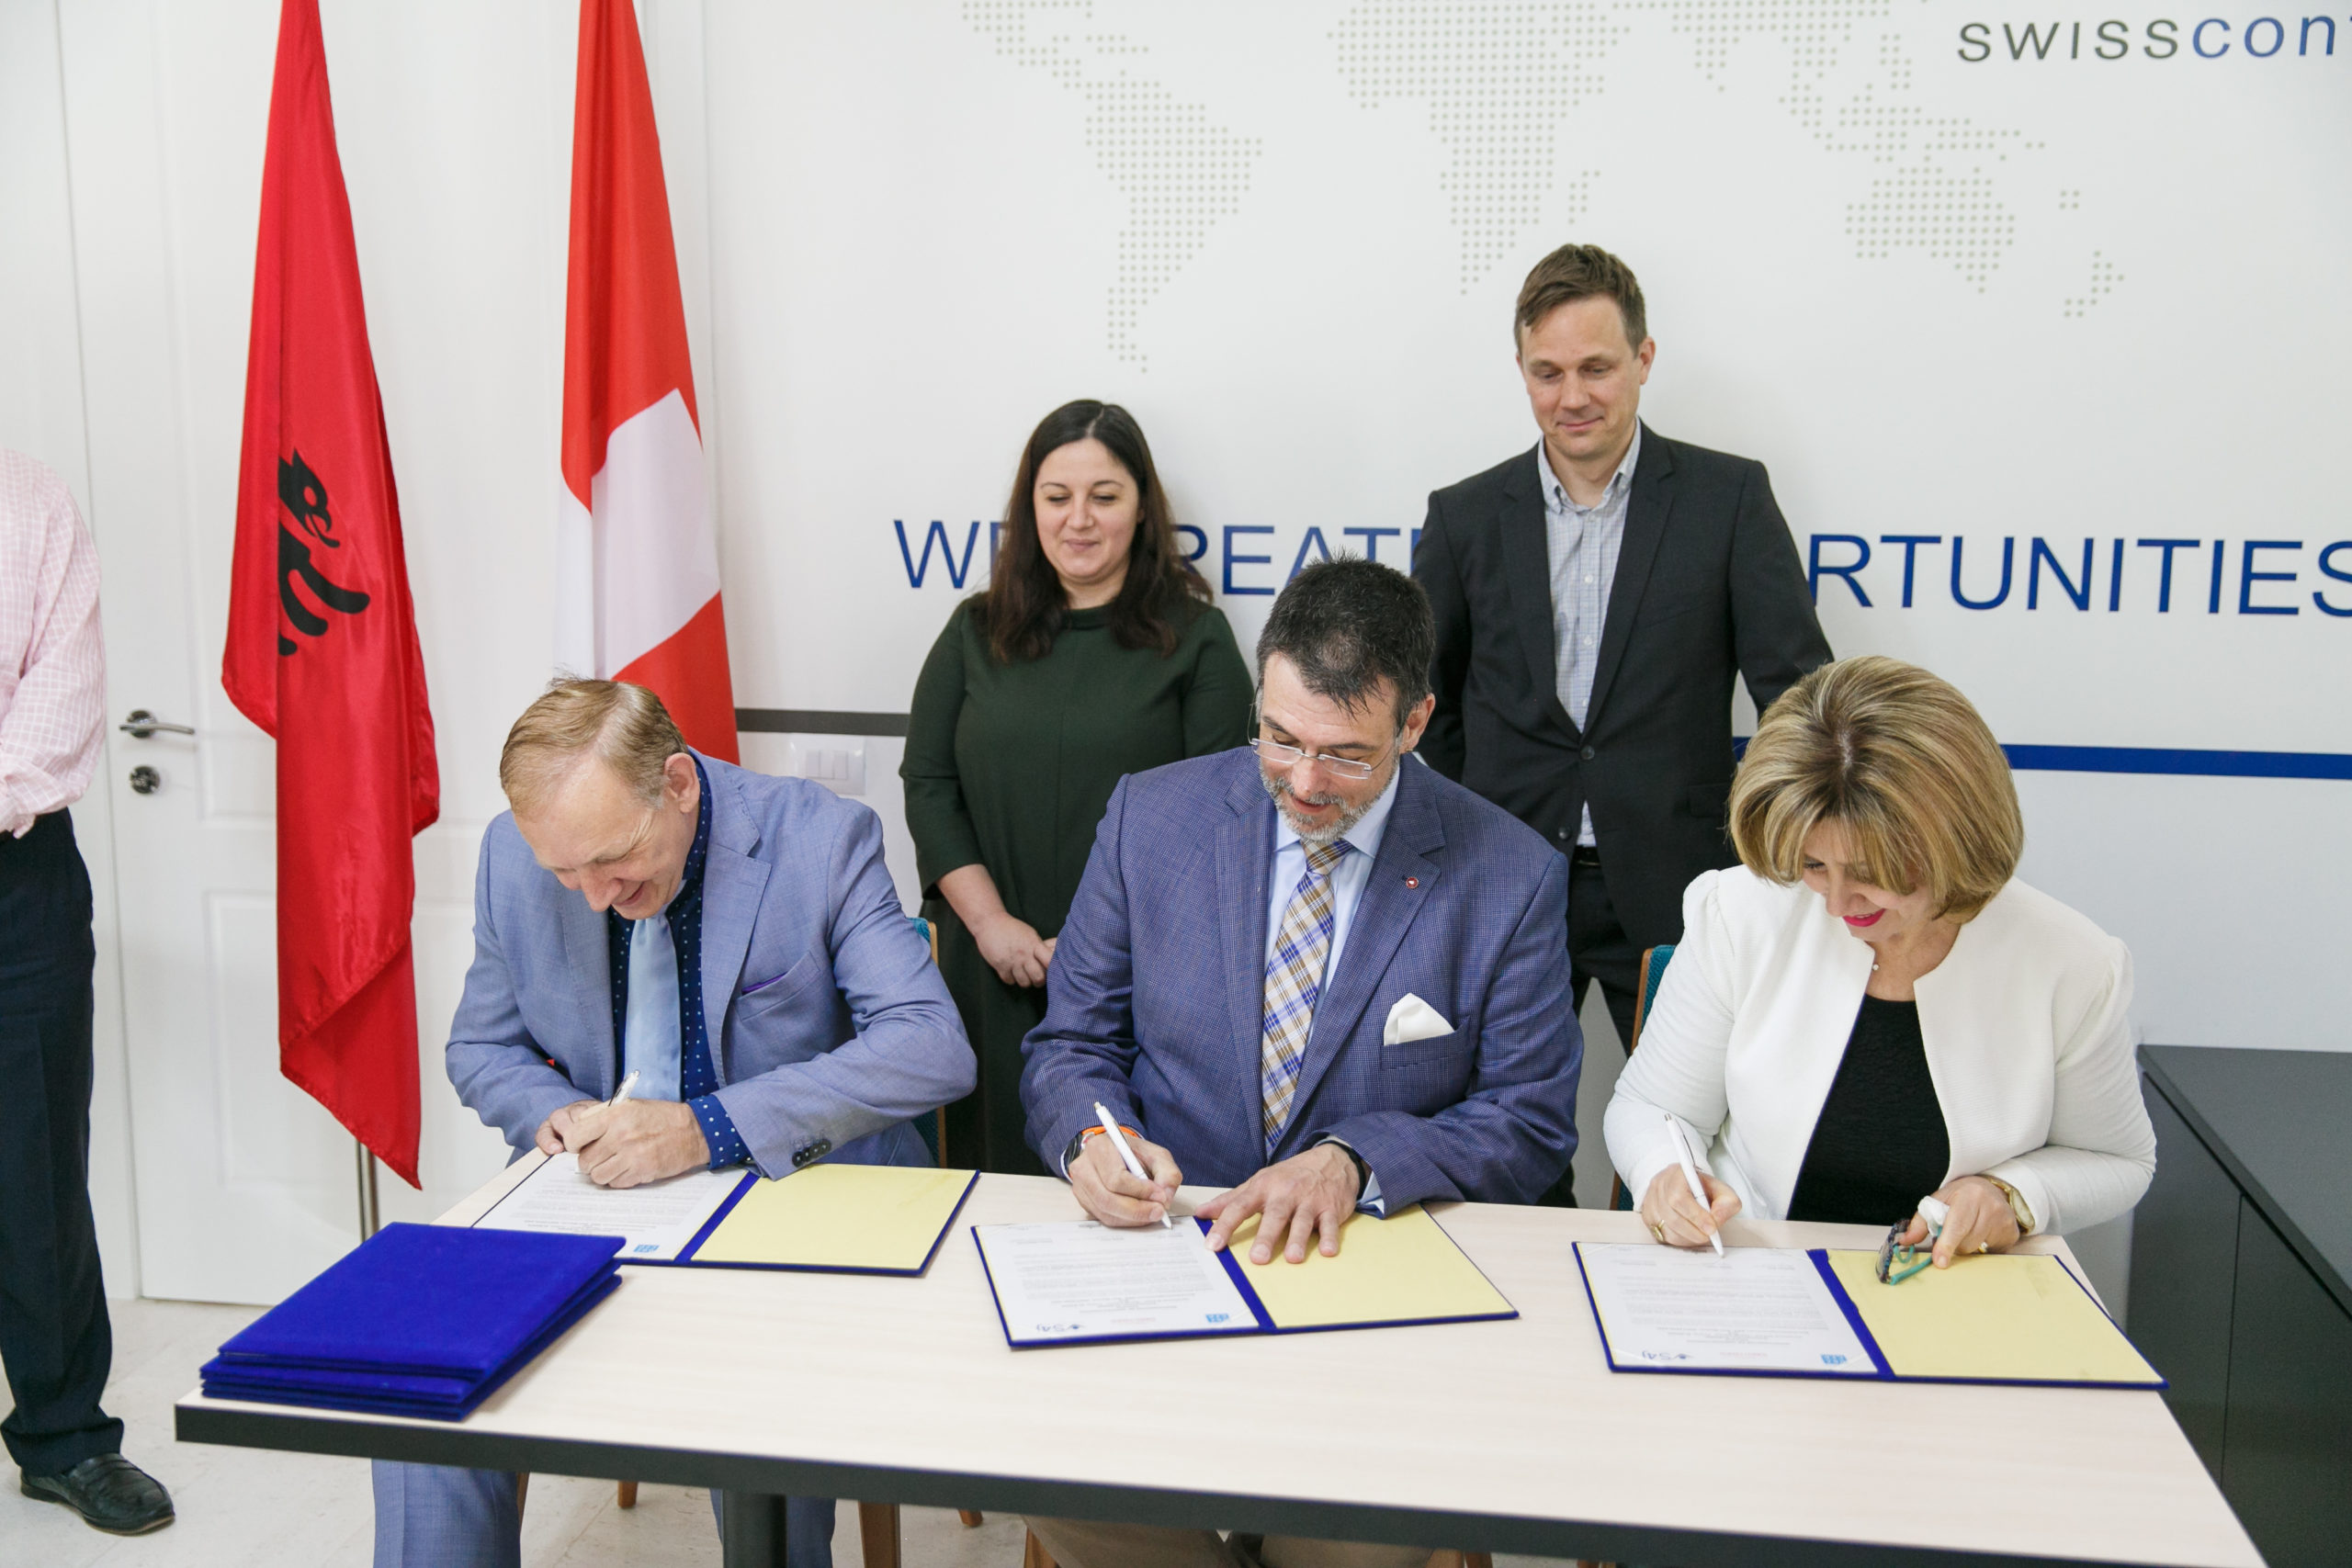 Bashkëpunim i ri midis shkollave shqiptare dhe zvicerane: 2 marrëveshje të tjera binjakëzimi të nënshkruara në muajin prill 2018.